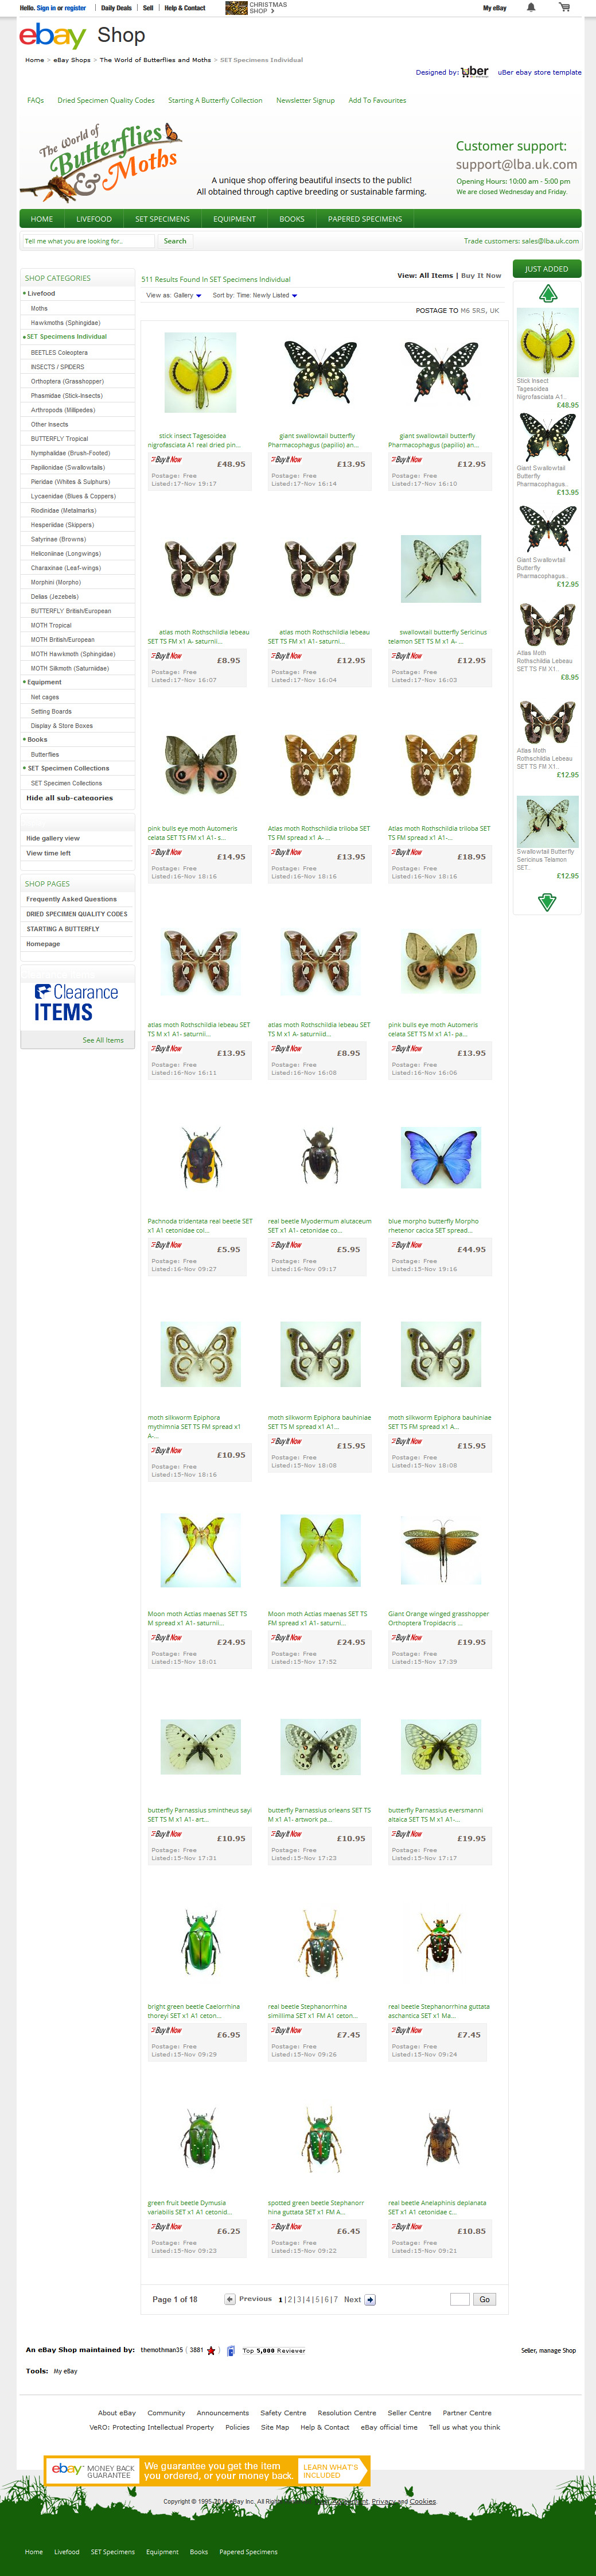 butterflyandmoths-ebay-shop-category-design